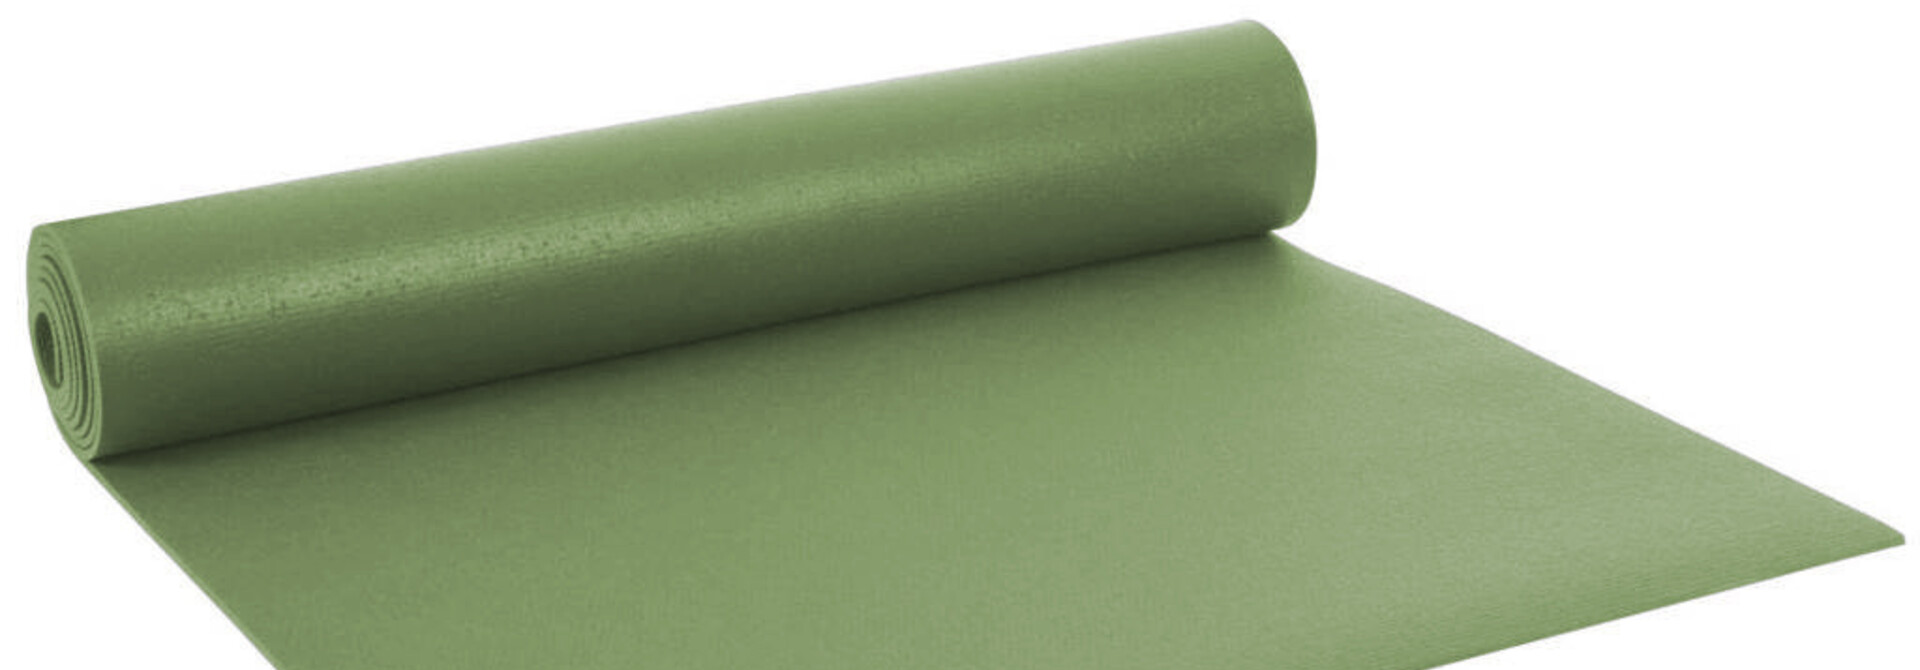 Yogisha Studio Yoga Mat XL - Light Green